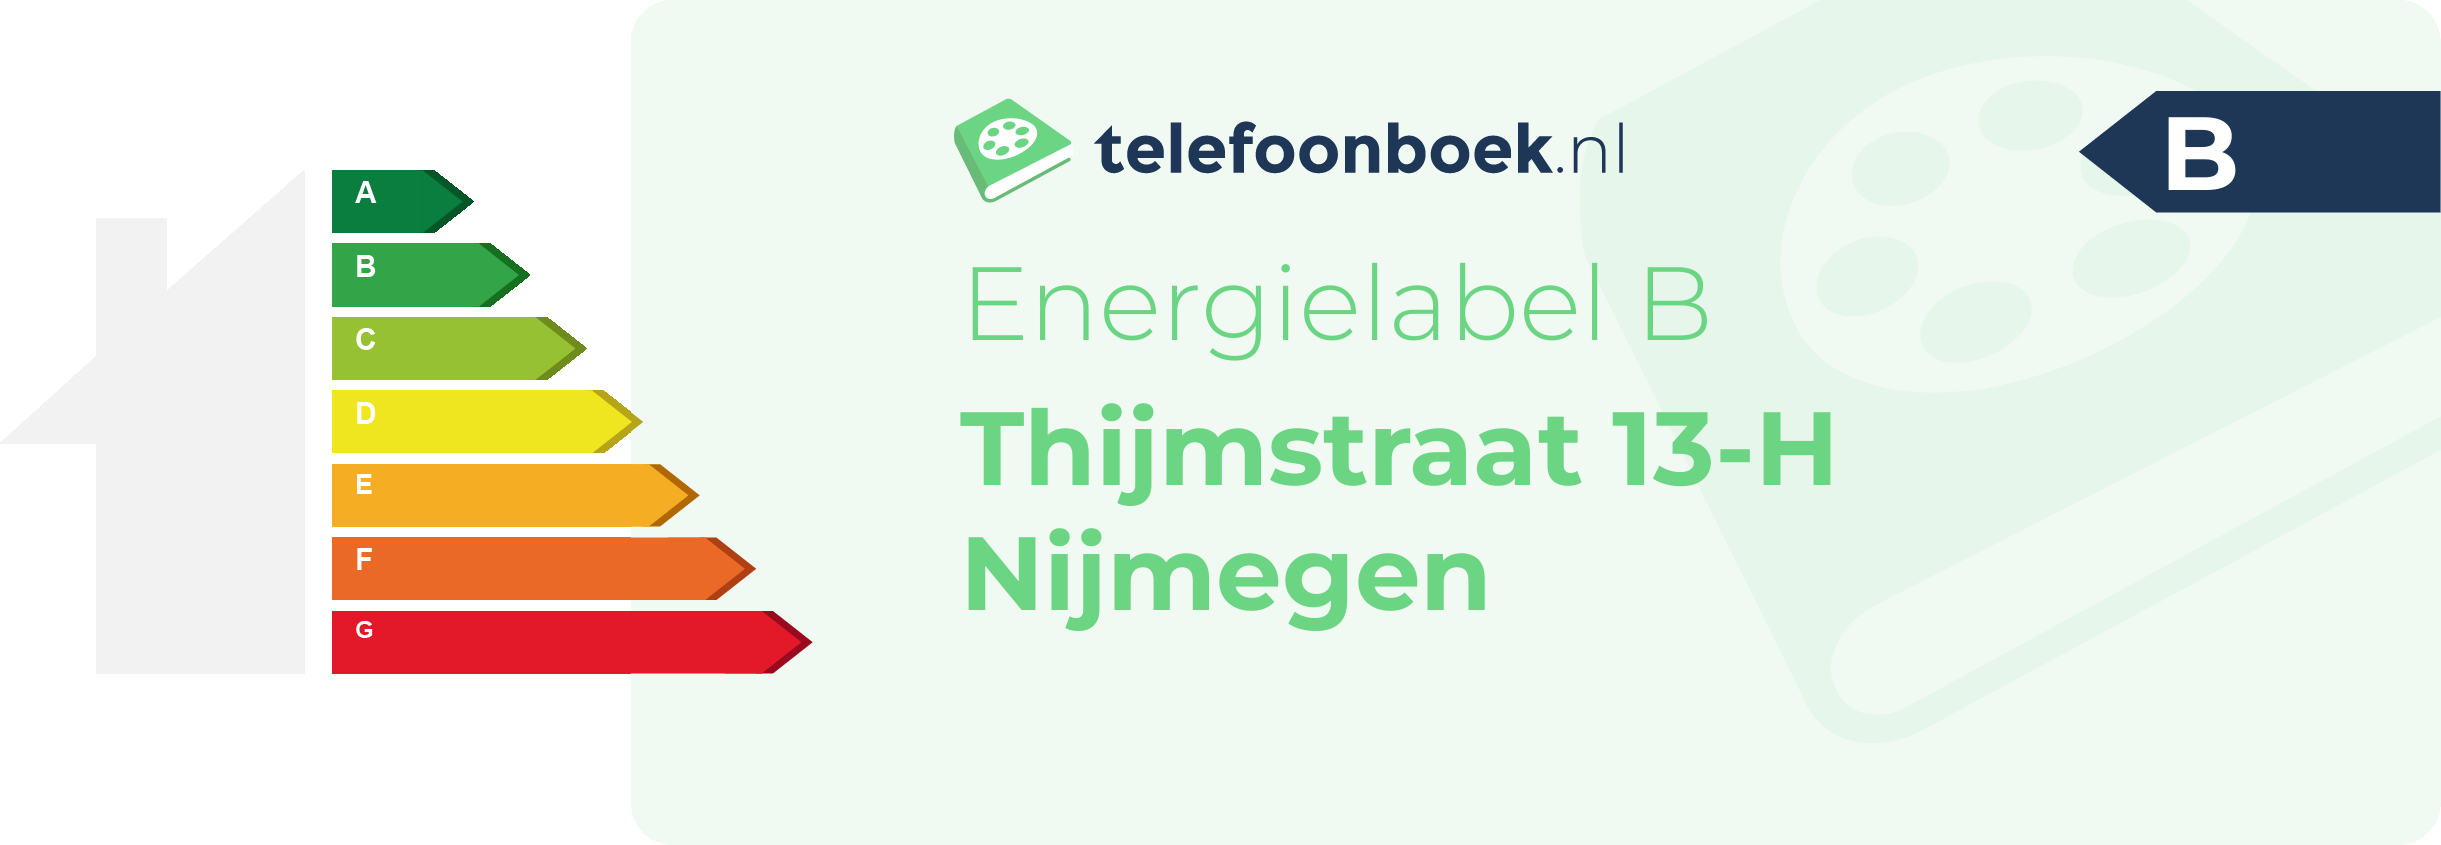 Energielabel Thijmstraat 13-H Nijmegen